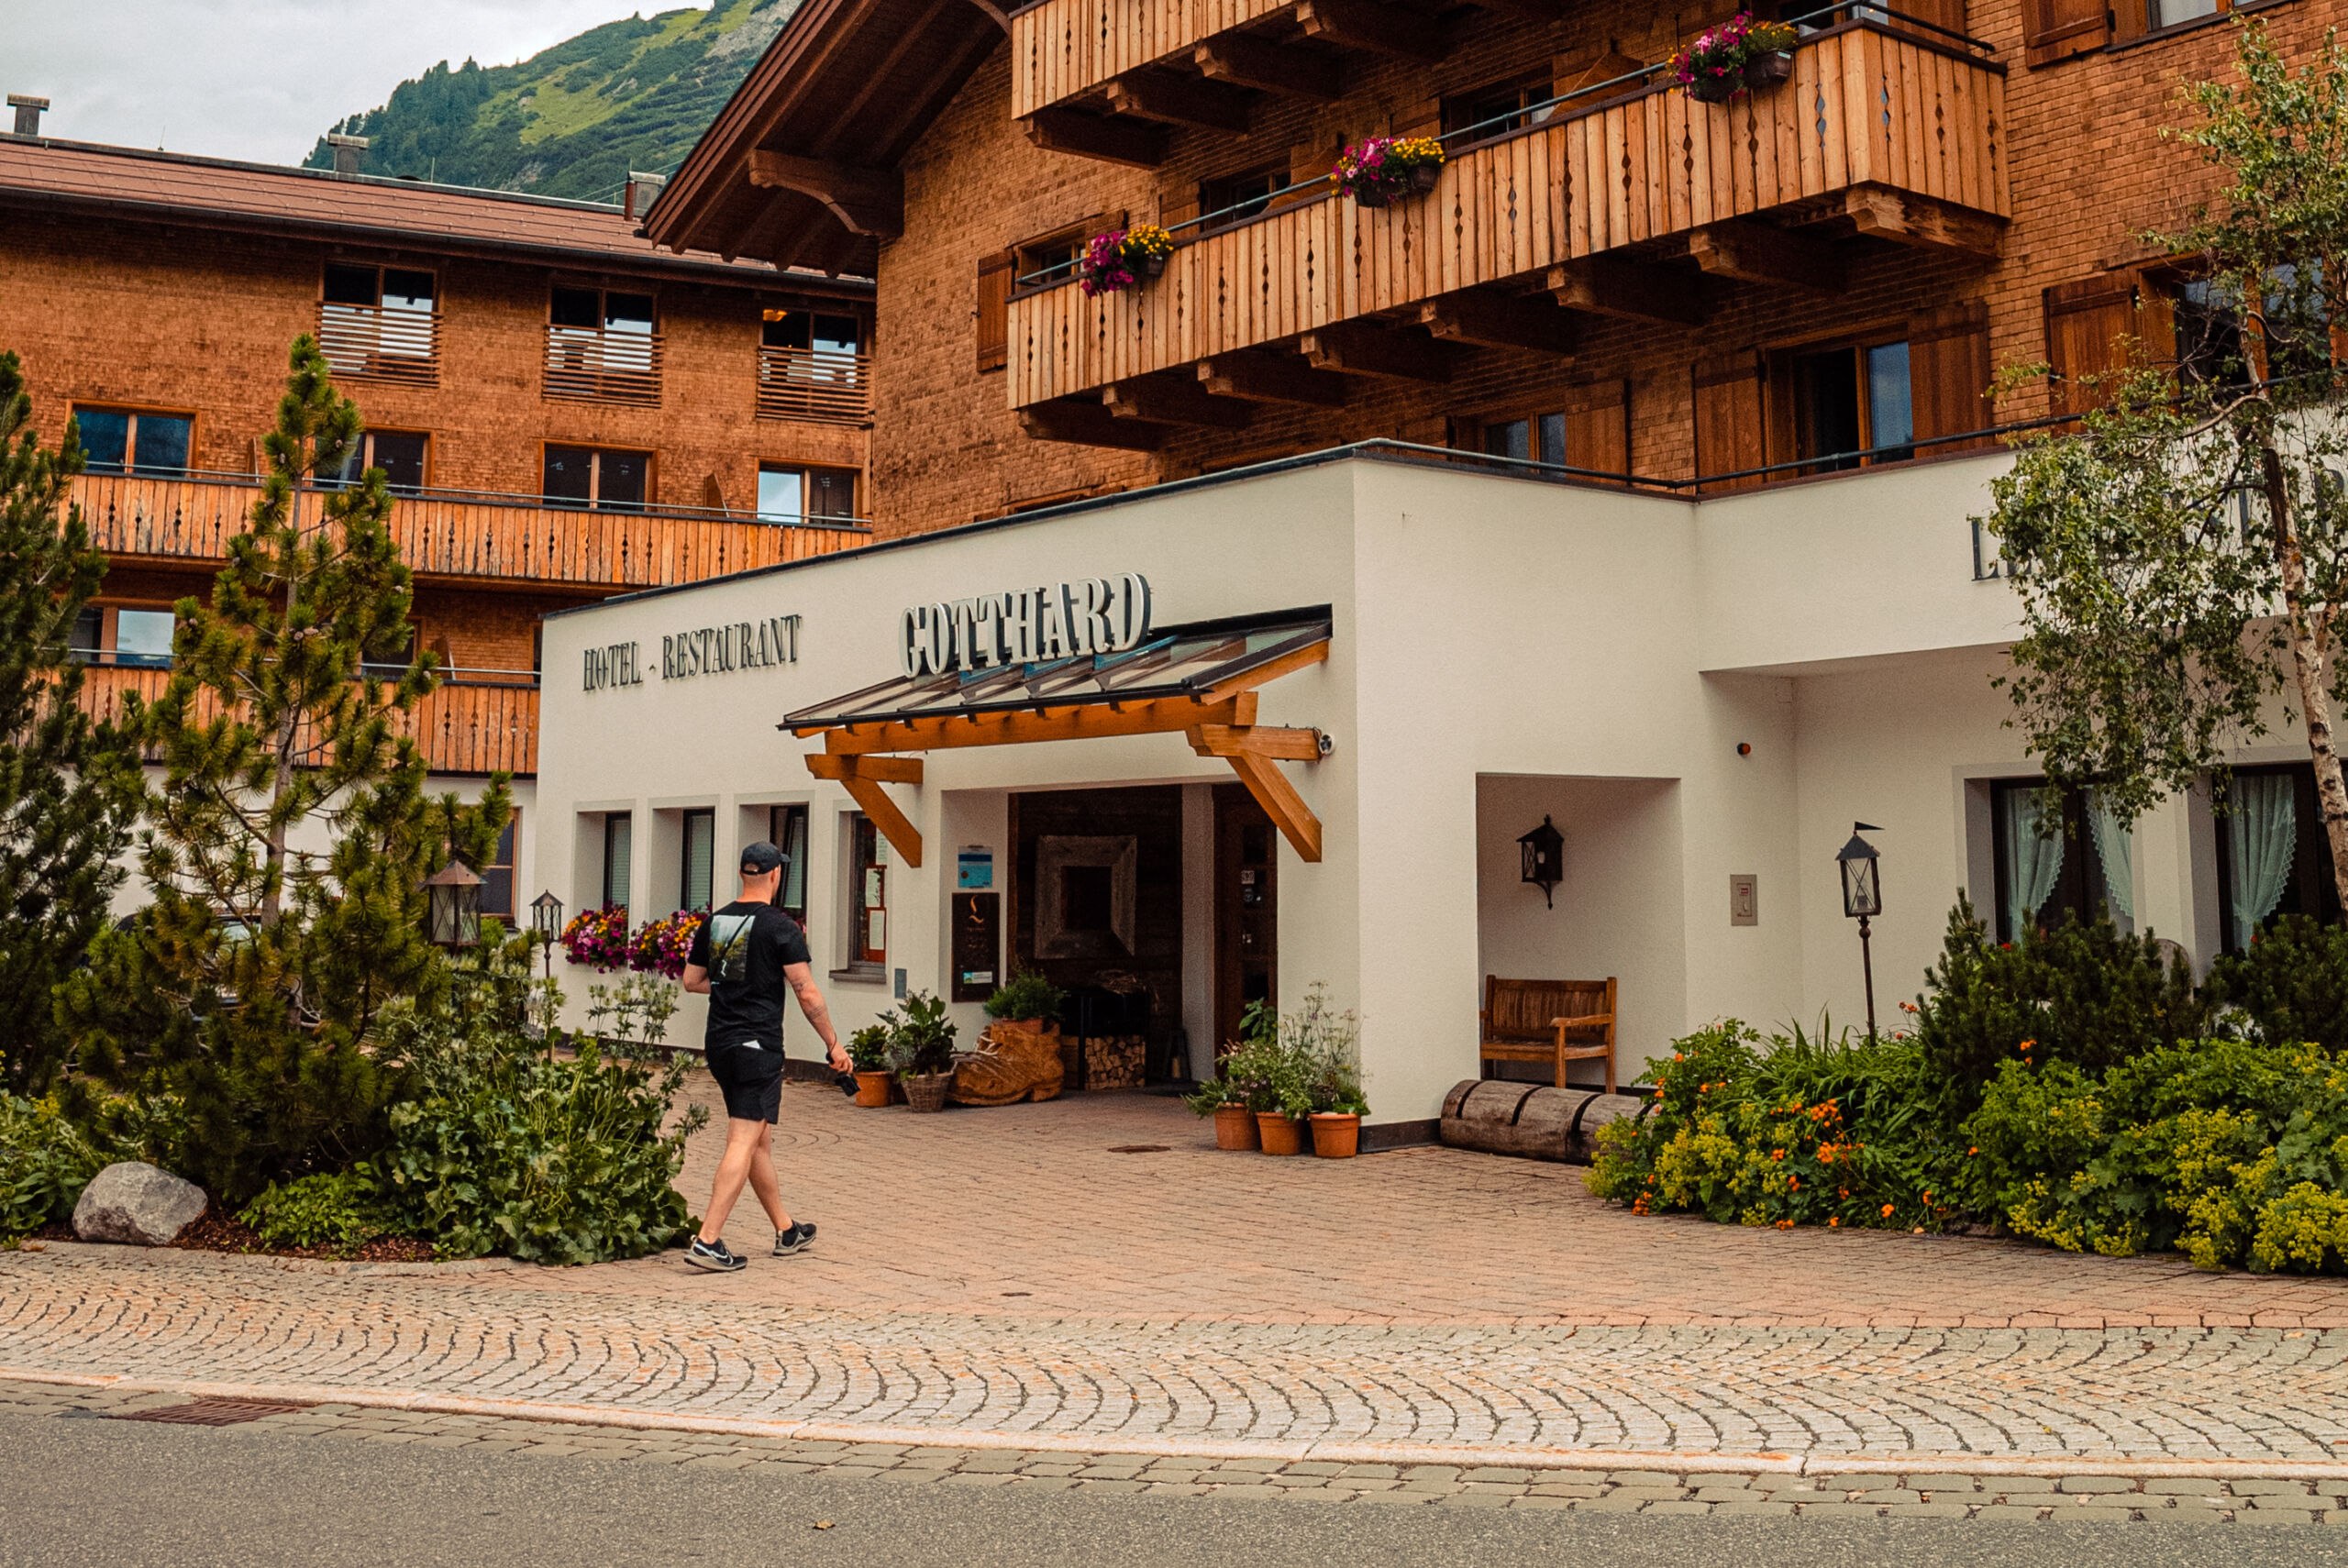 Hotel Gotthard in Lech Zürs